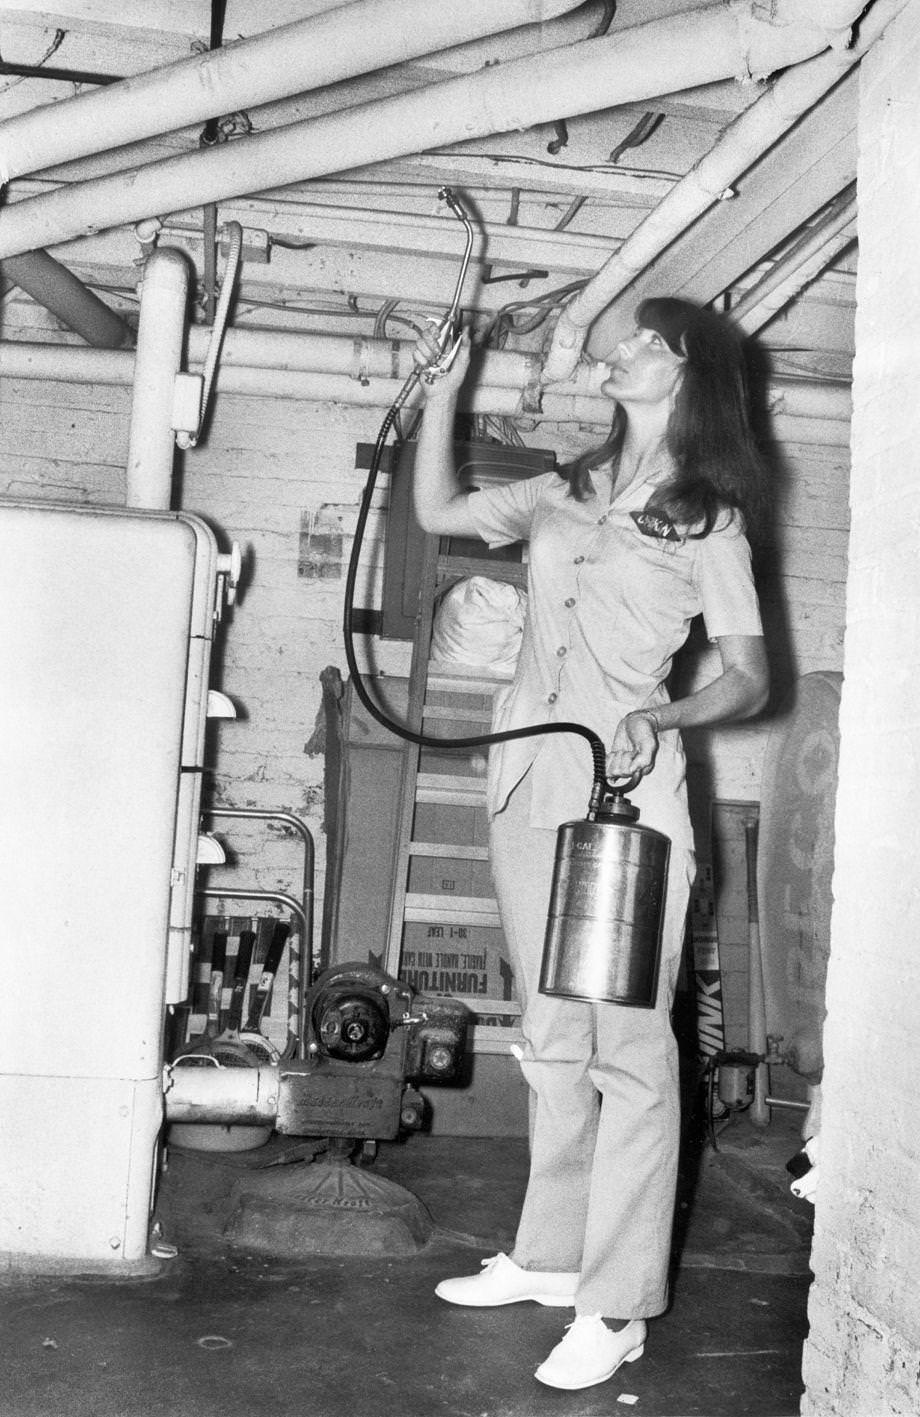 An exterminator Linda Summerlin sprayed pest control in a customer’s basement, 1973.